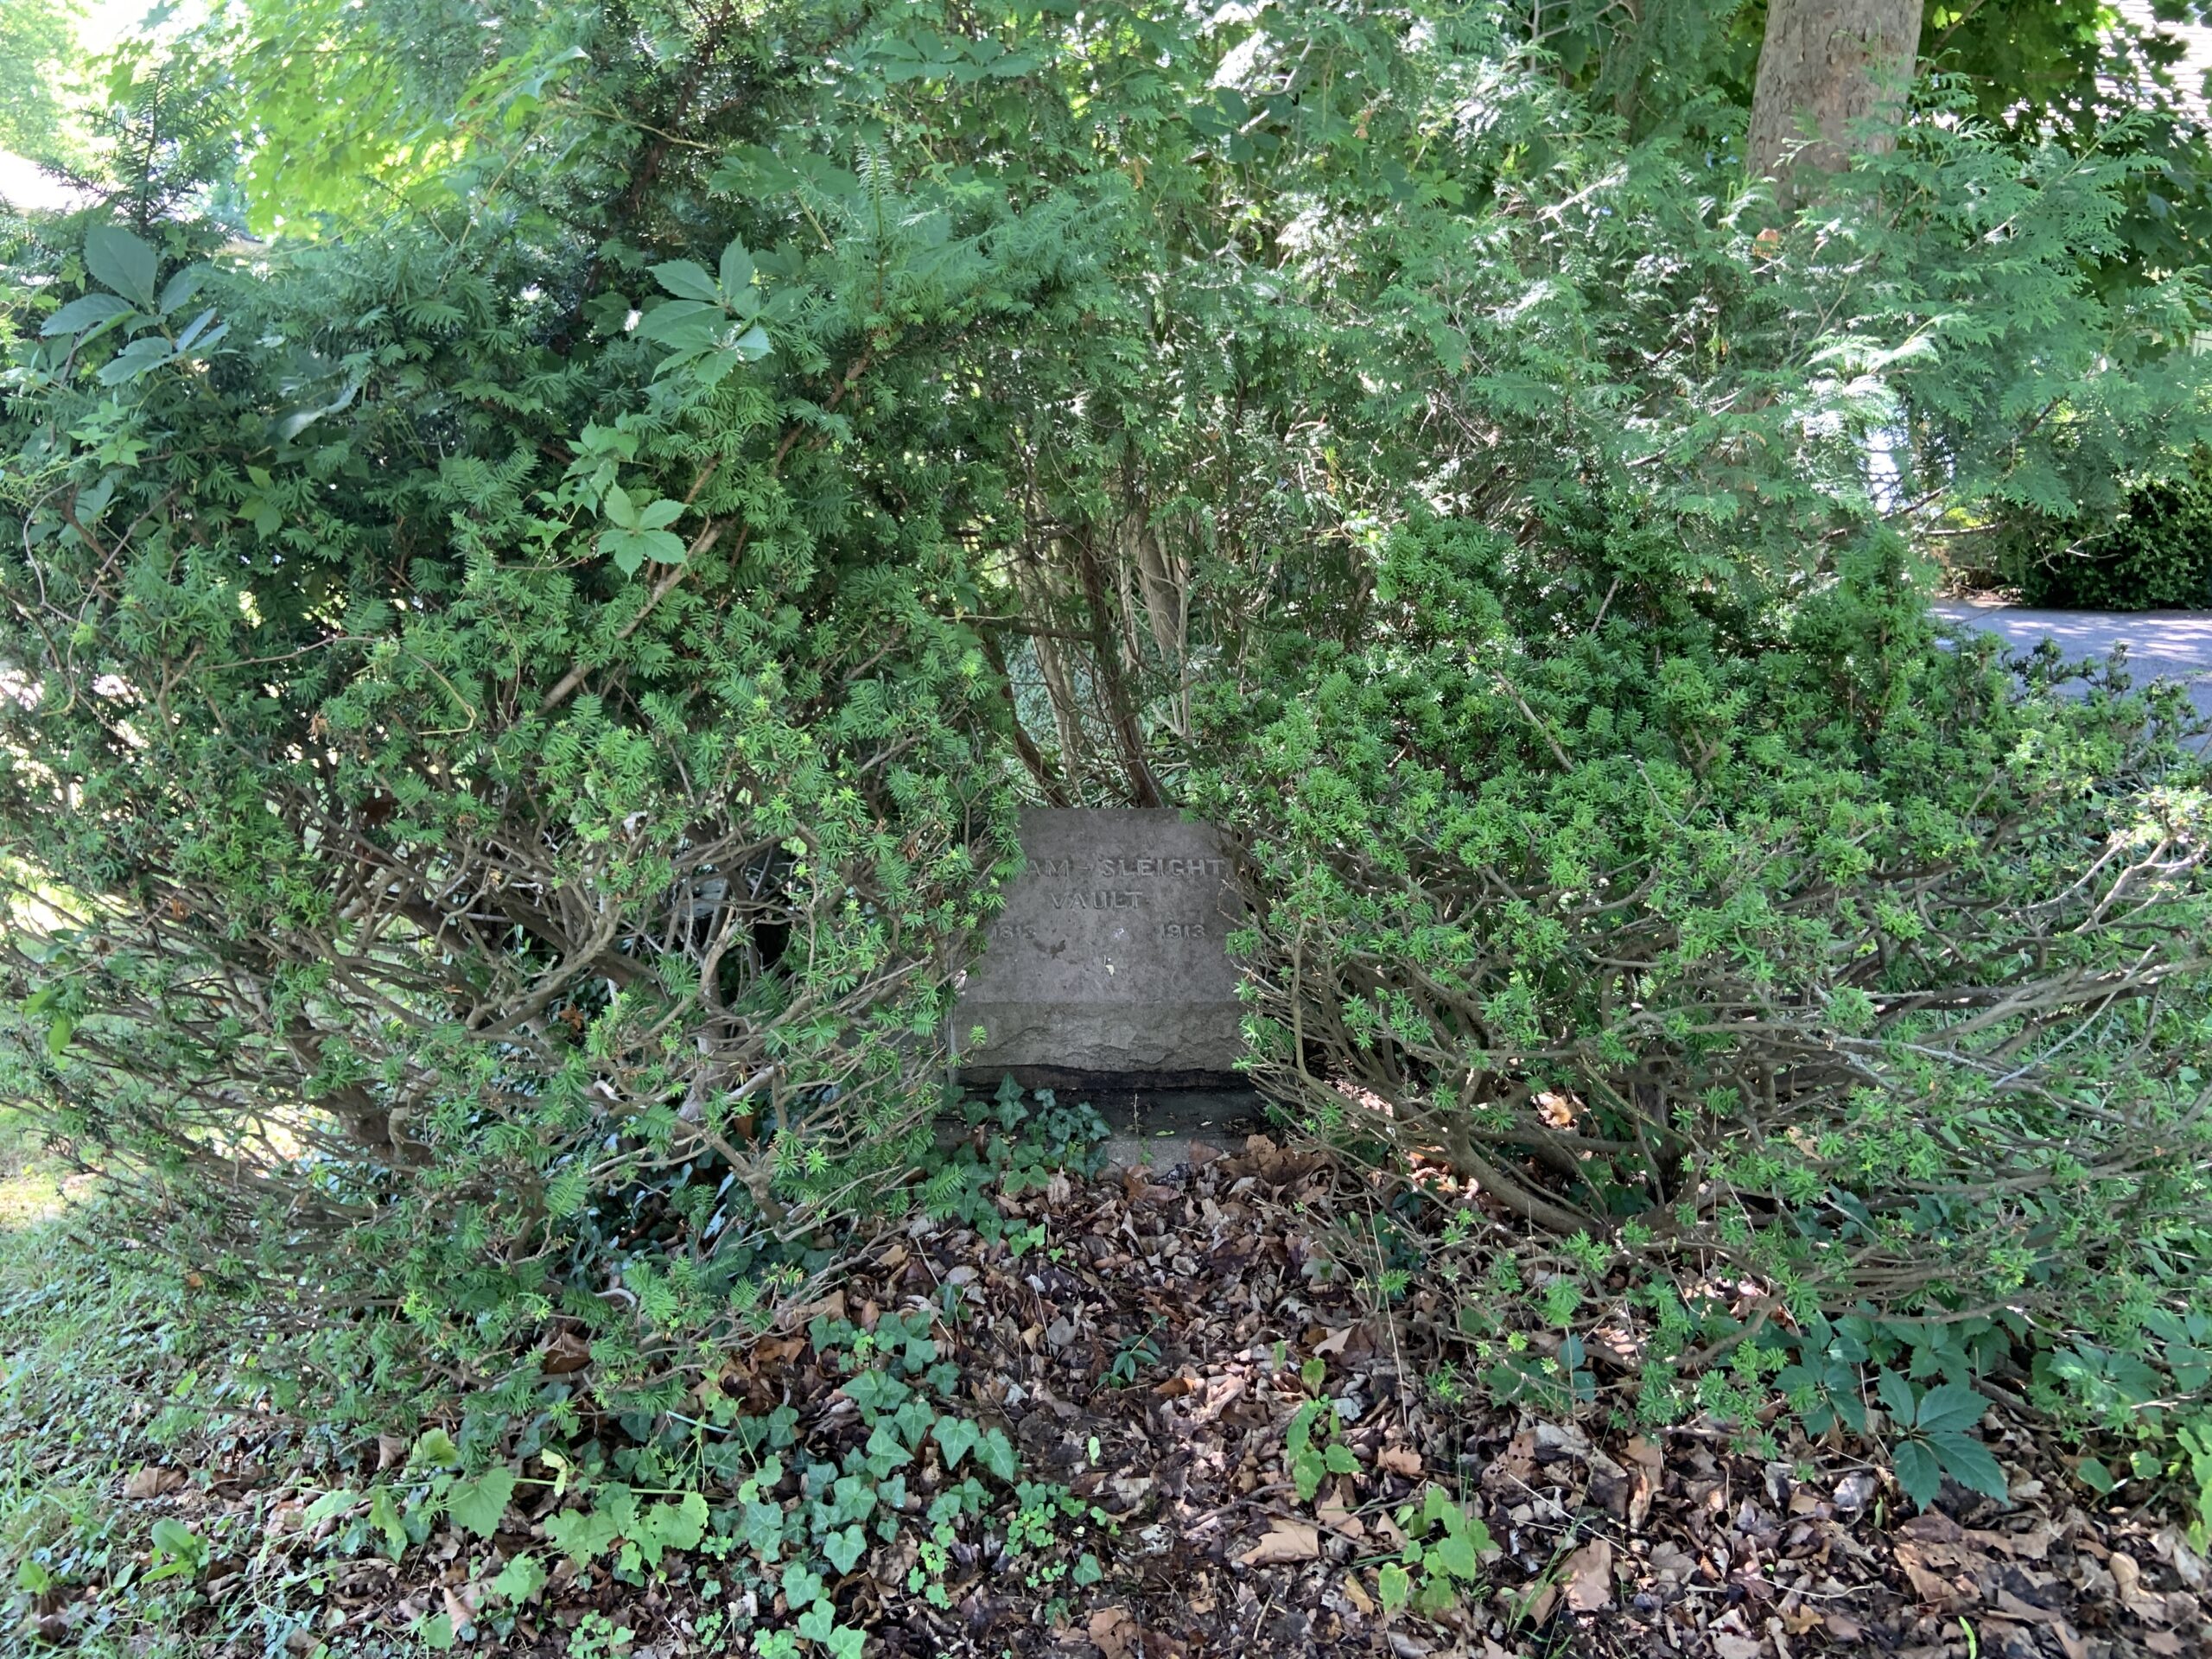 The marker for the Rysam Sleight Vault is partially hidden by shrubs. STEPHEN J. KOTZ